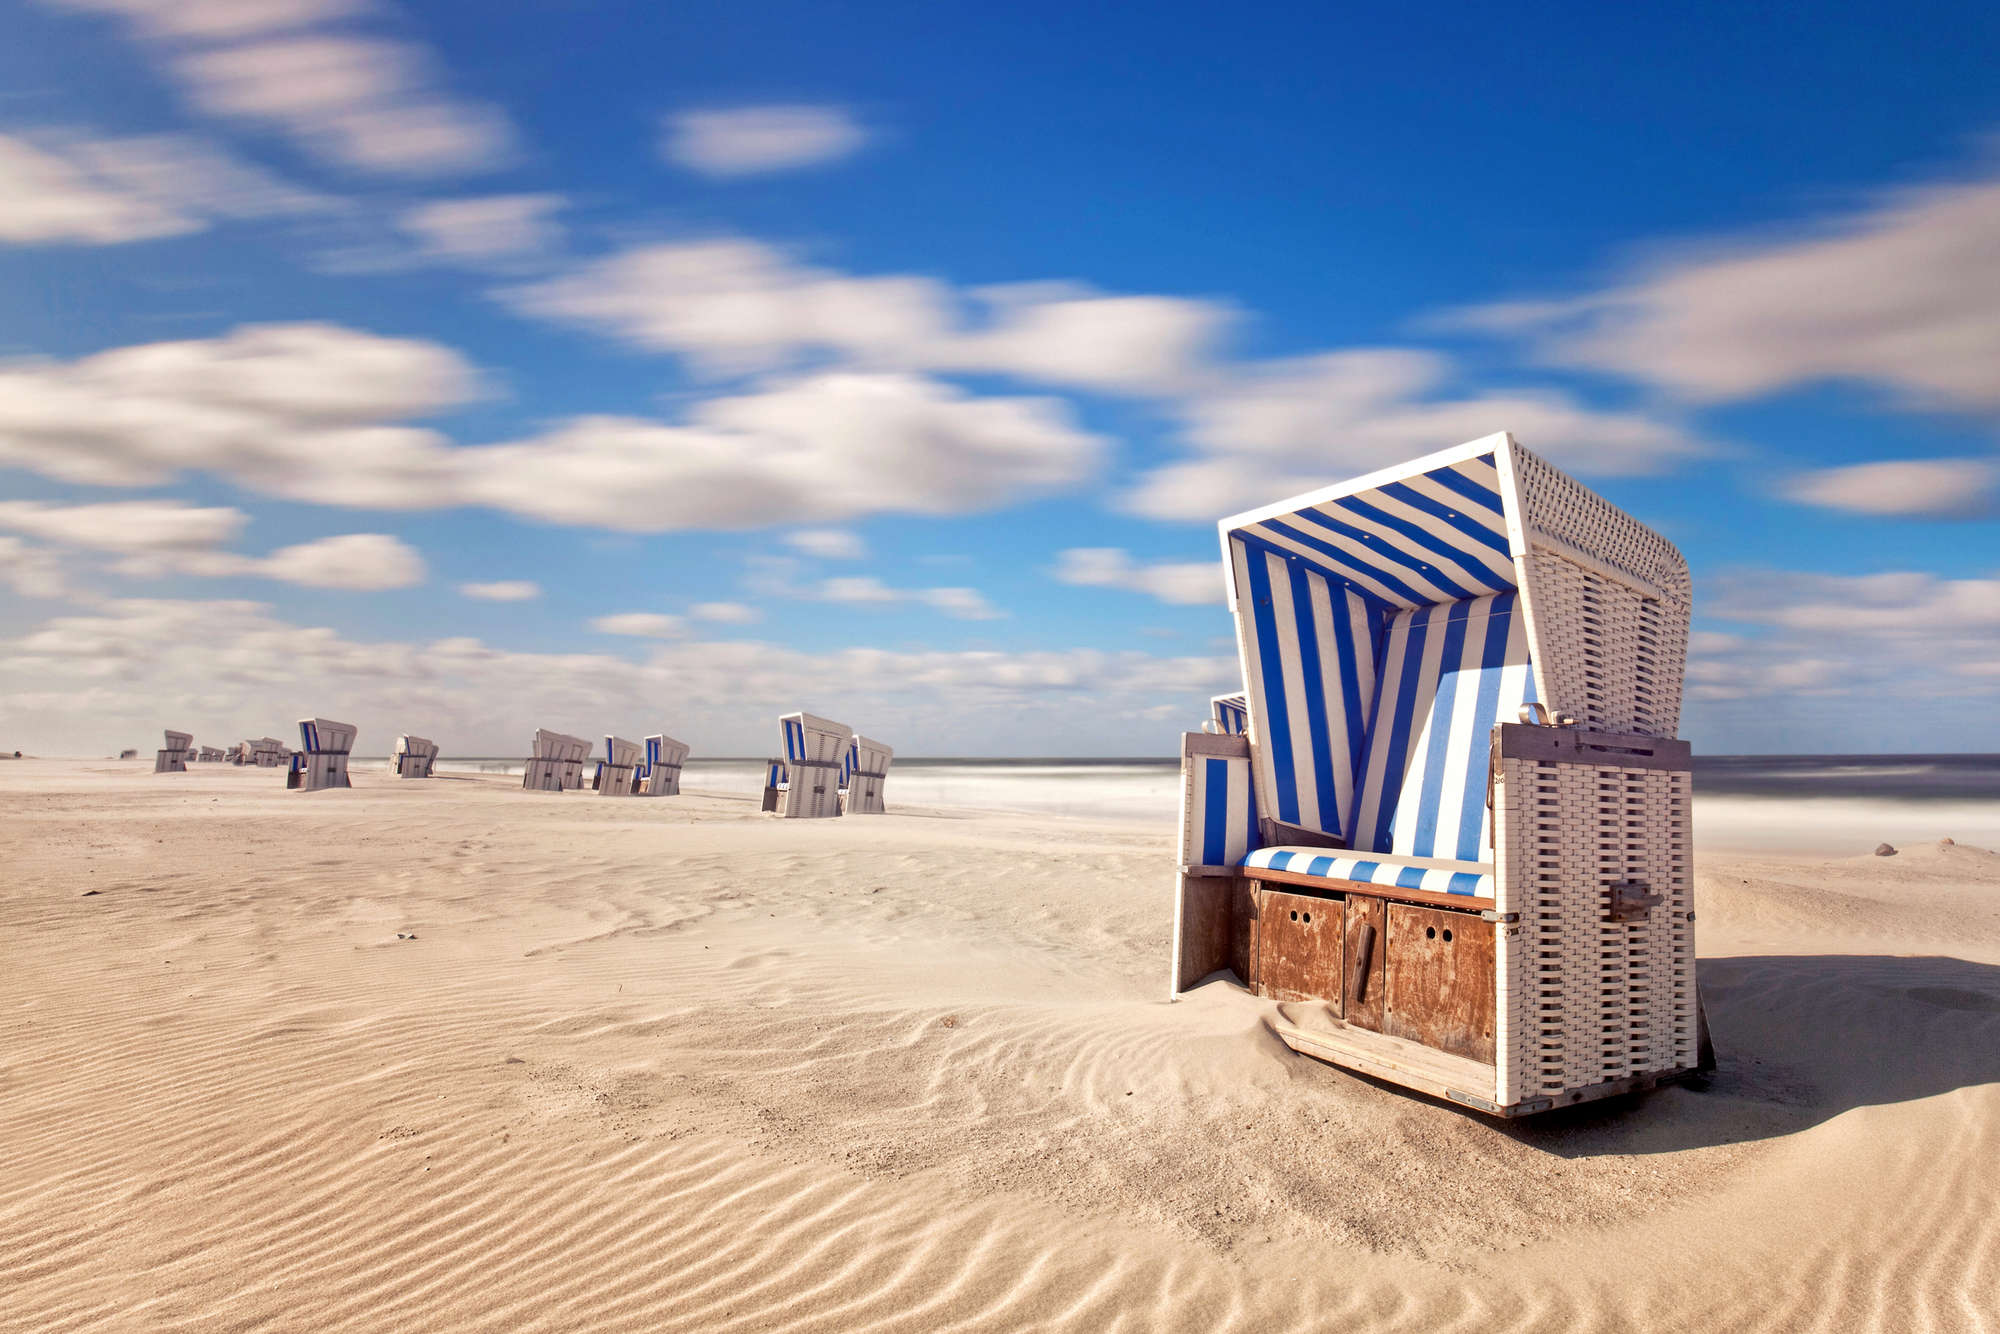             Mural de la playa sillas de playa en la arena sobre vellón liso de primera calidad
        